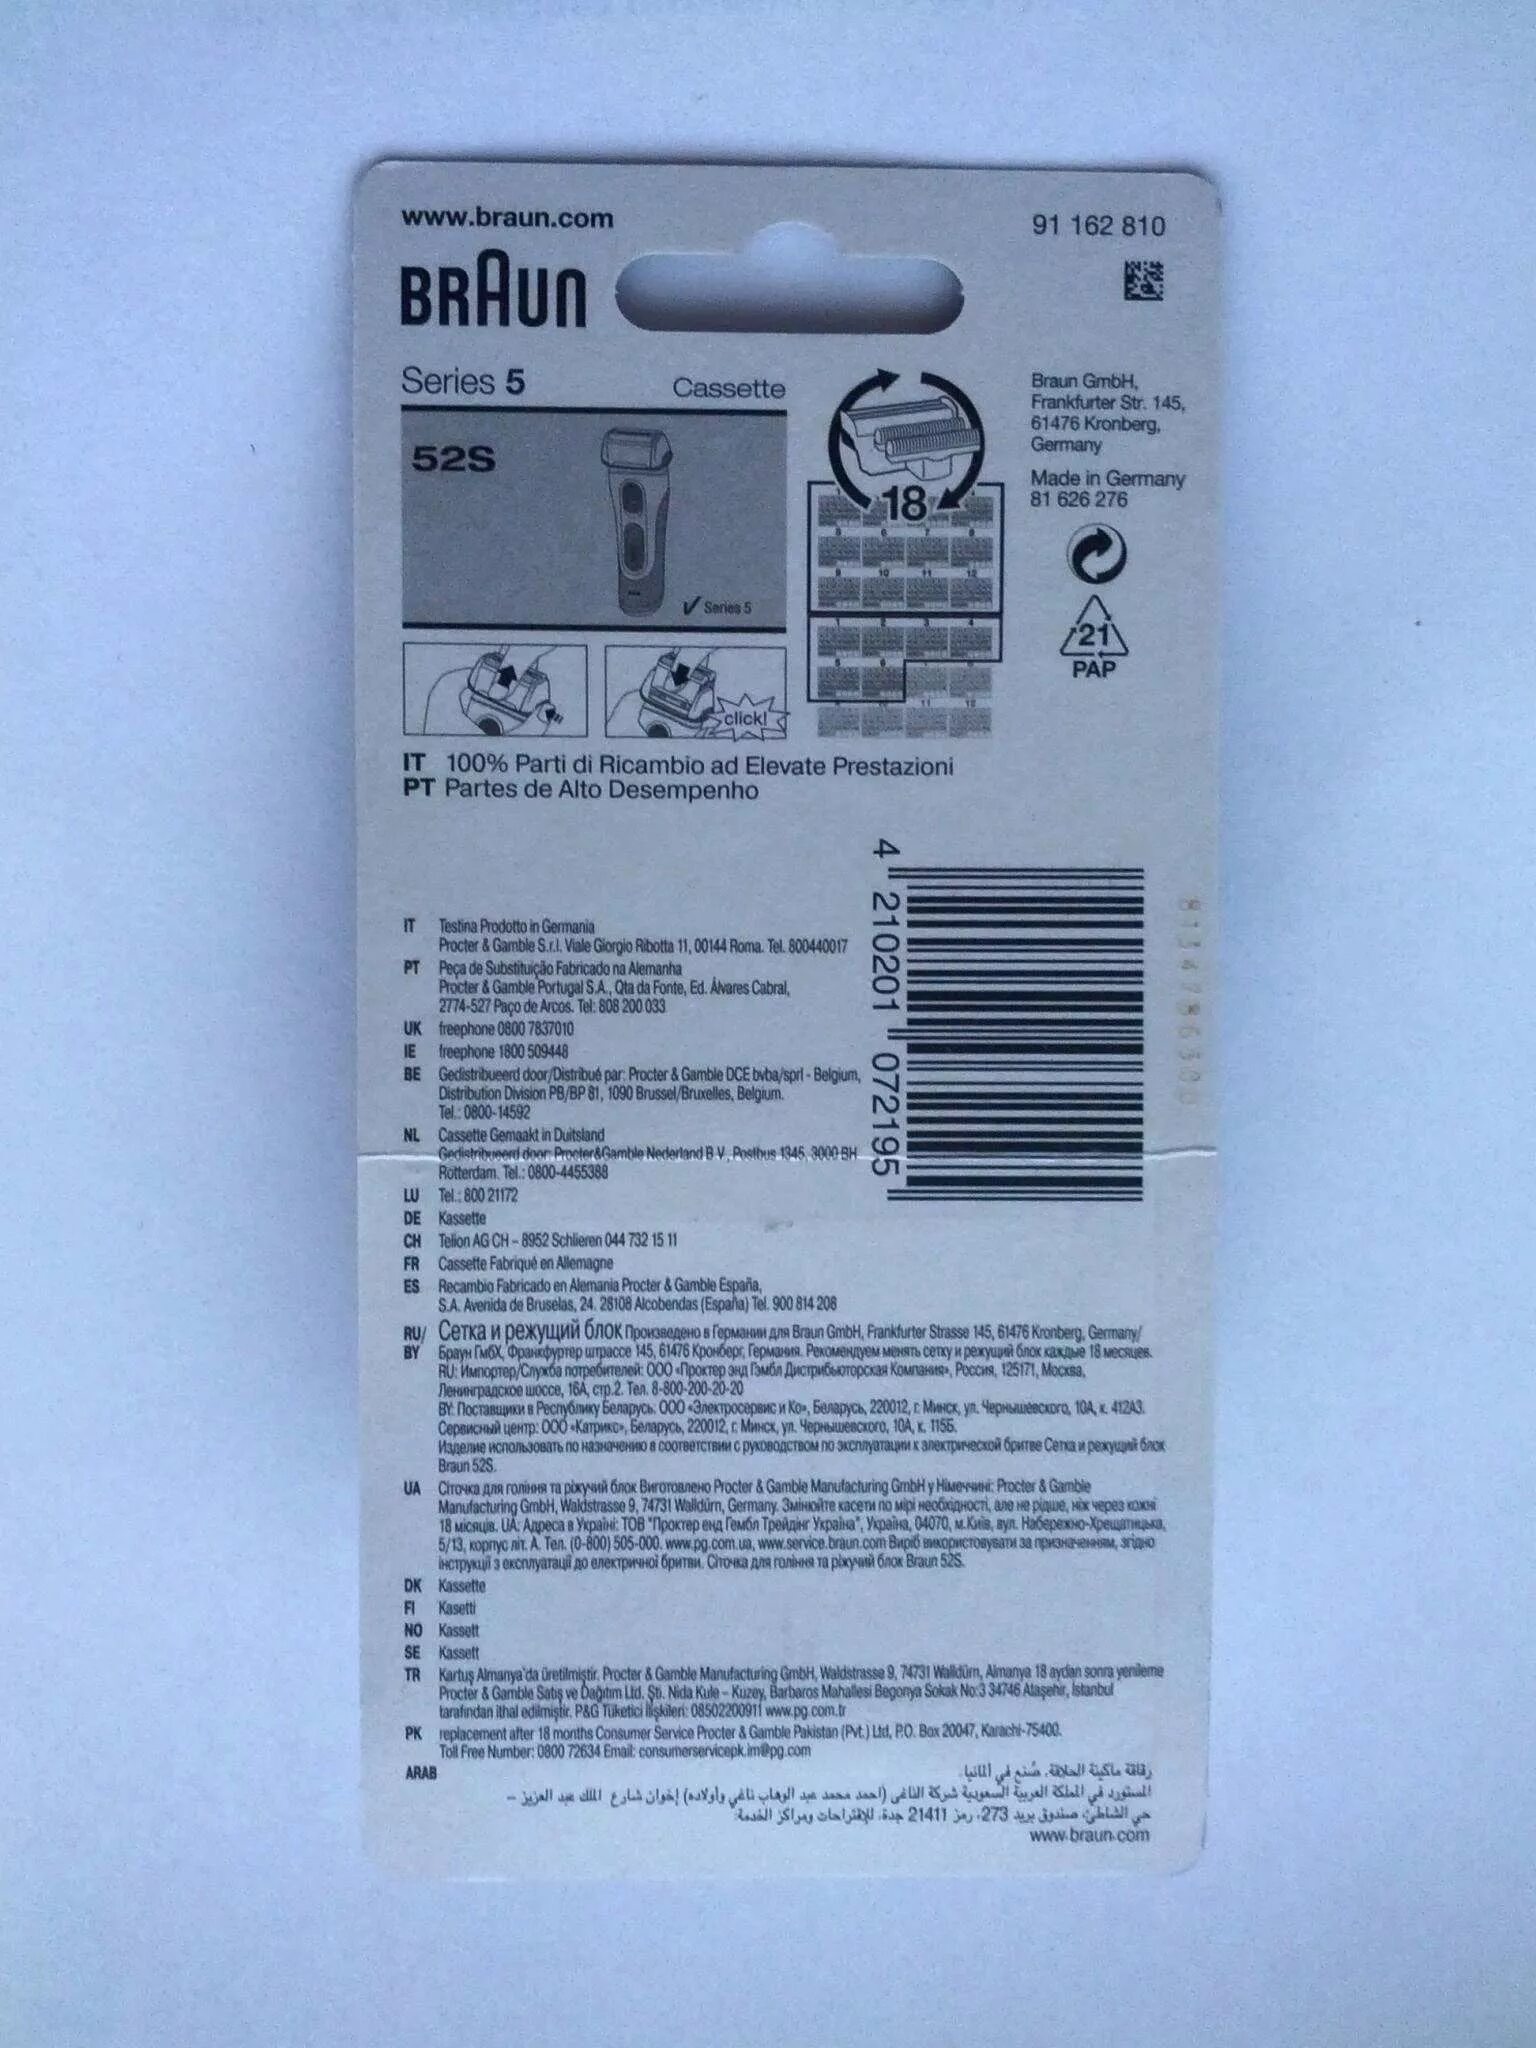 Сетка braun series 5. Сетка+блок Braun Series 5 52s. Сетка+режущий блок Braun 5 52s. Braun 52s. Braun s5 индикаторы.